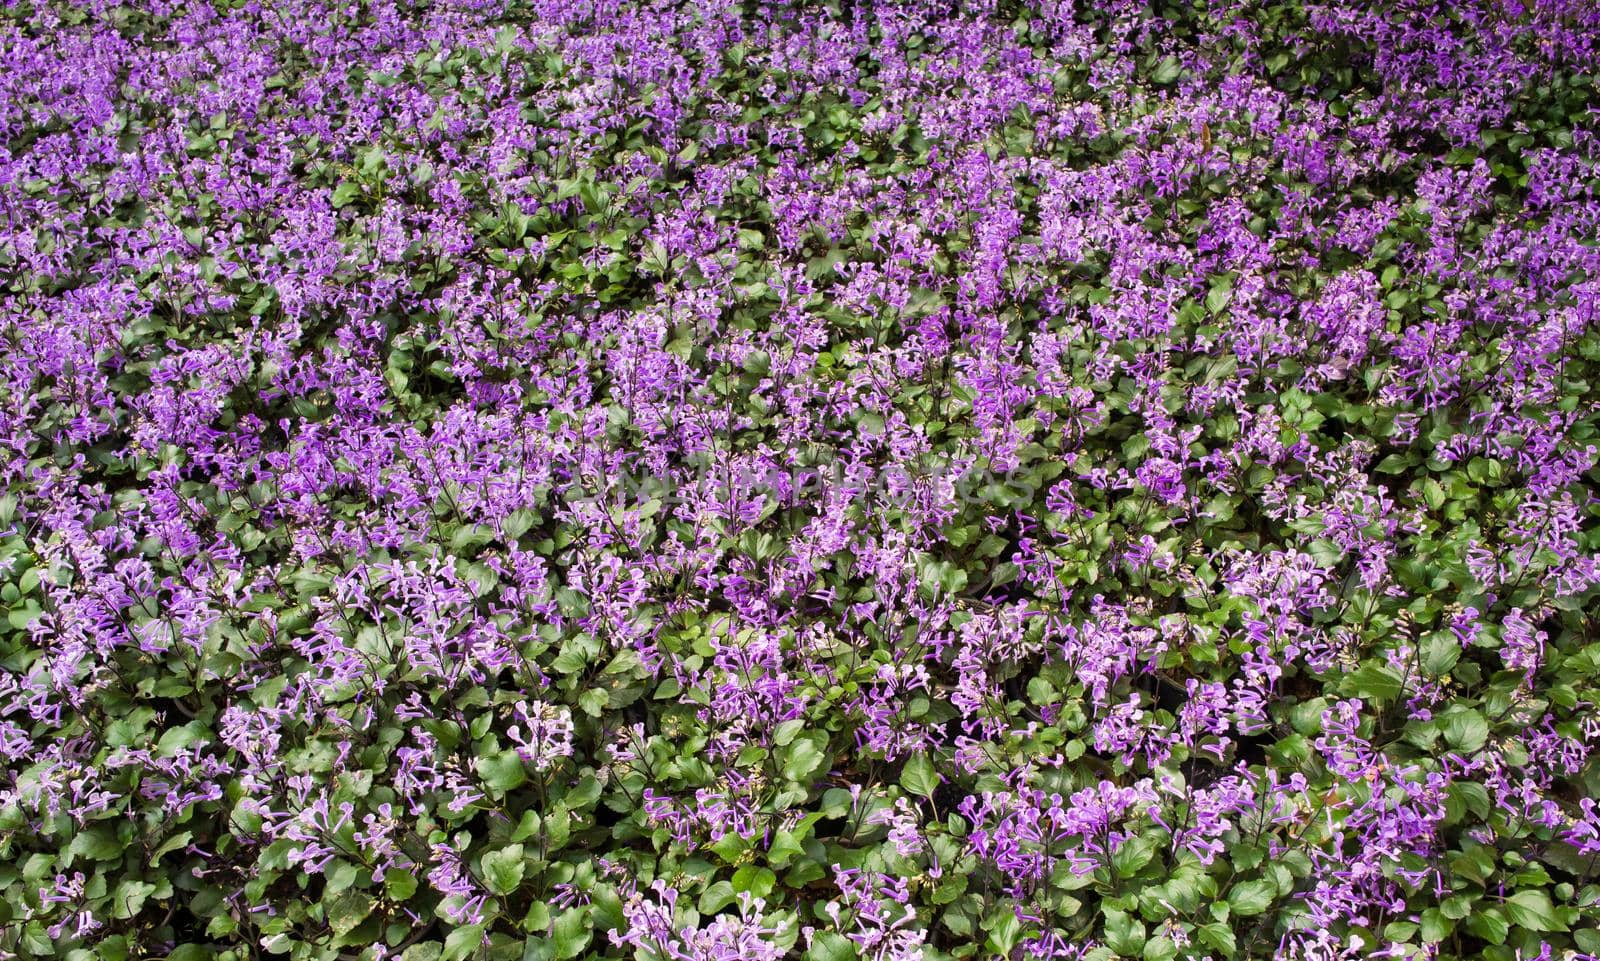 viloet flowers background by domonite